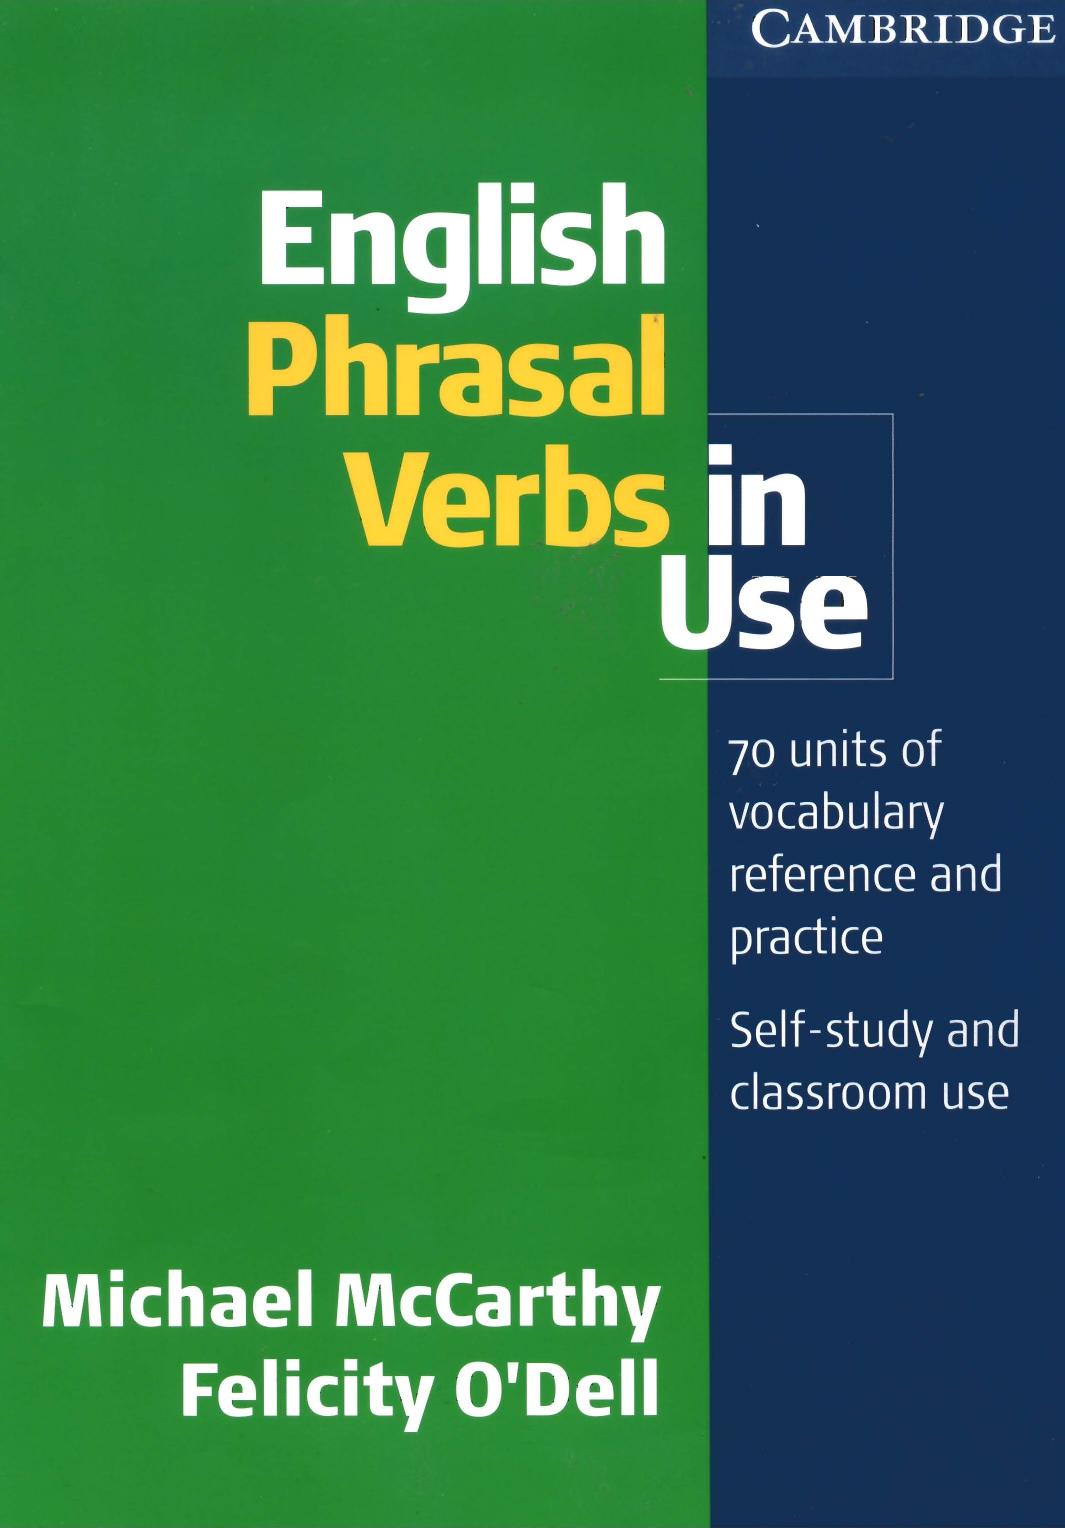 English Phrasal Verbs in Use 2008